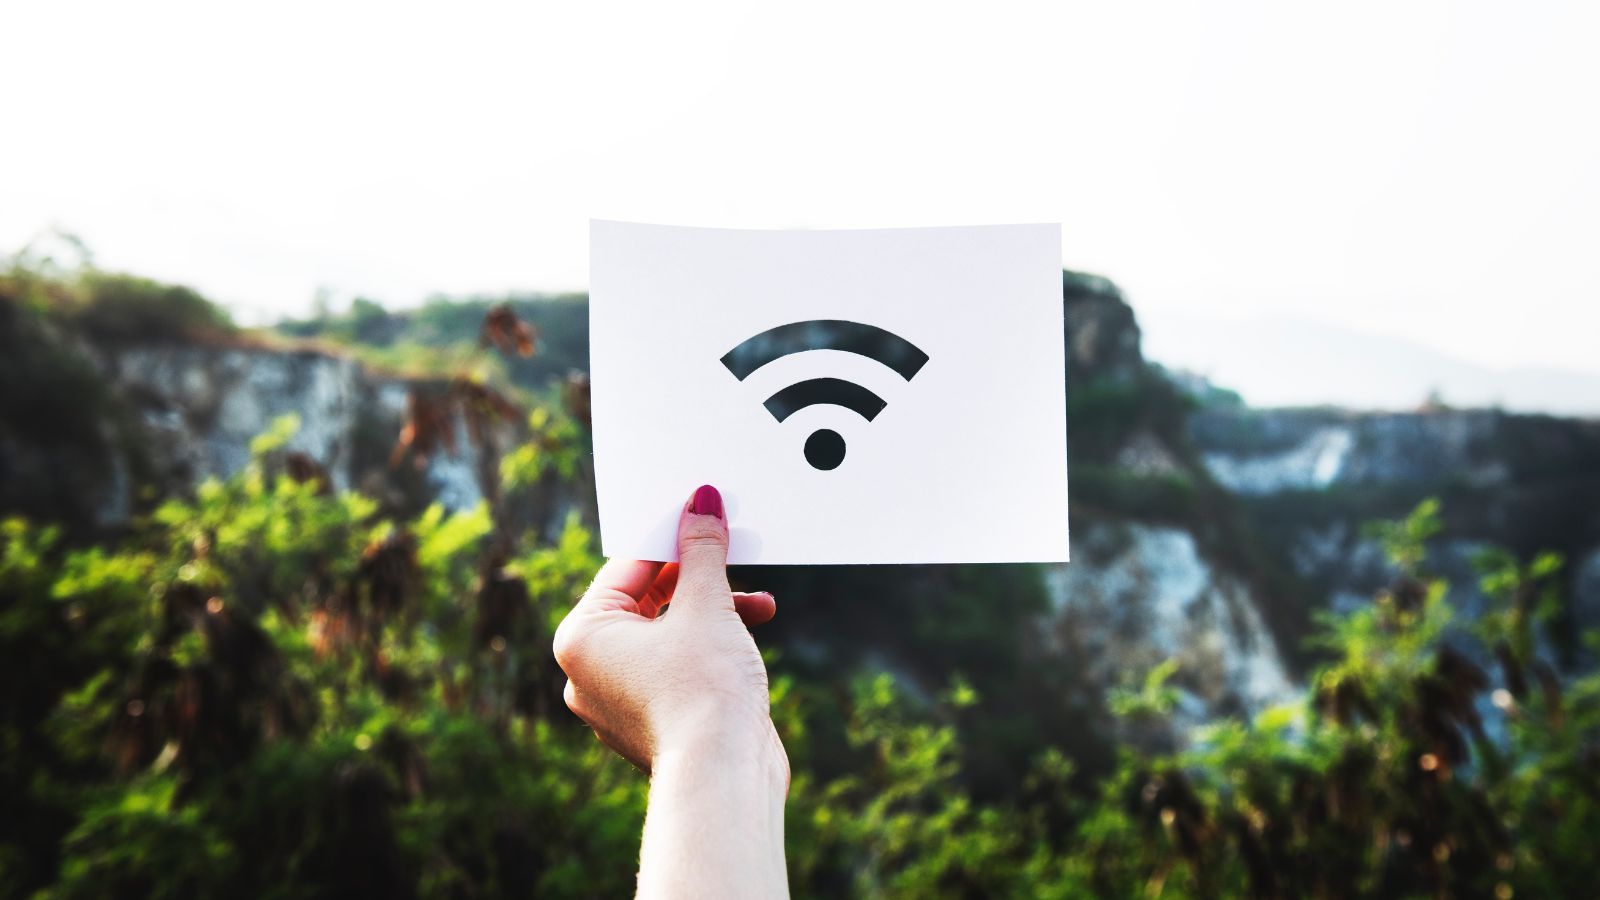 WiFi GRATIS, come avere bollette AZZERATE con Iliad, WindTre, TIM e Vodafone